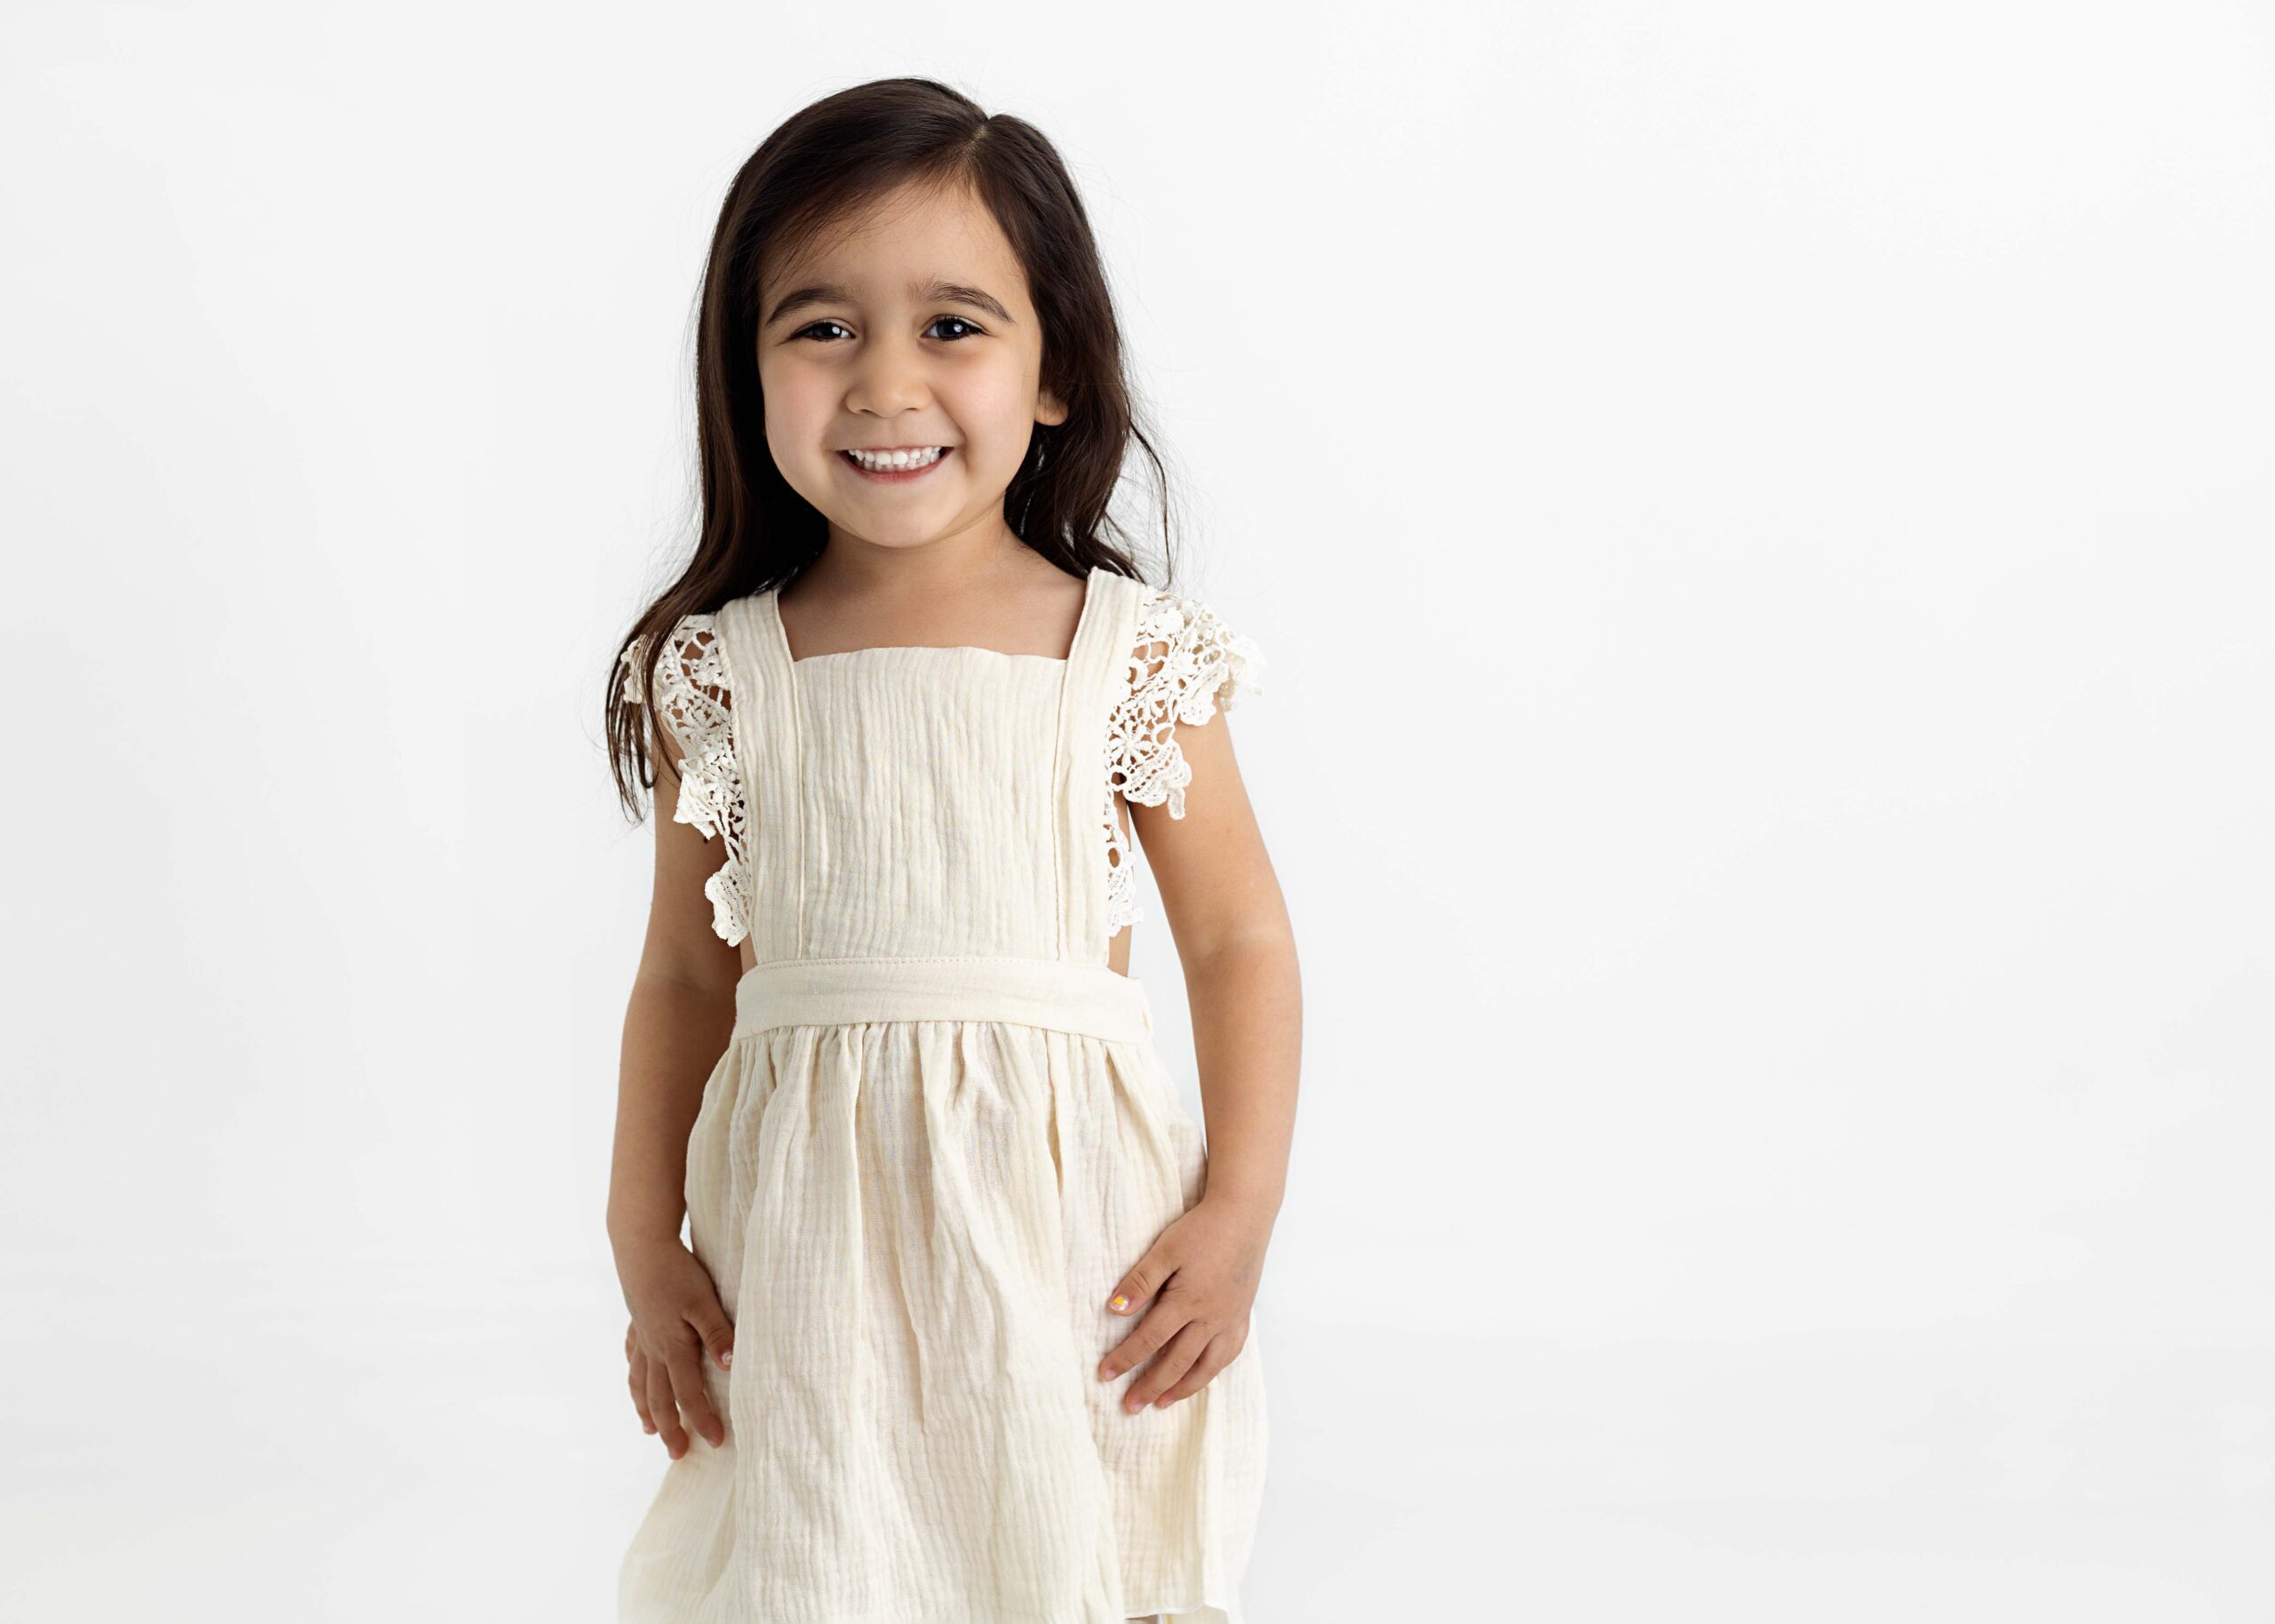 Little girl in white dress smiling for camera